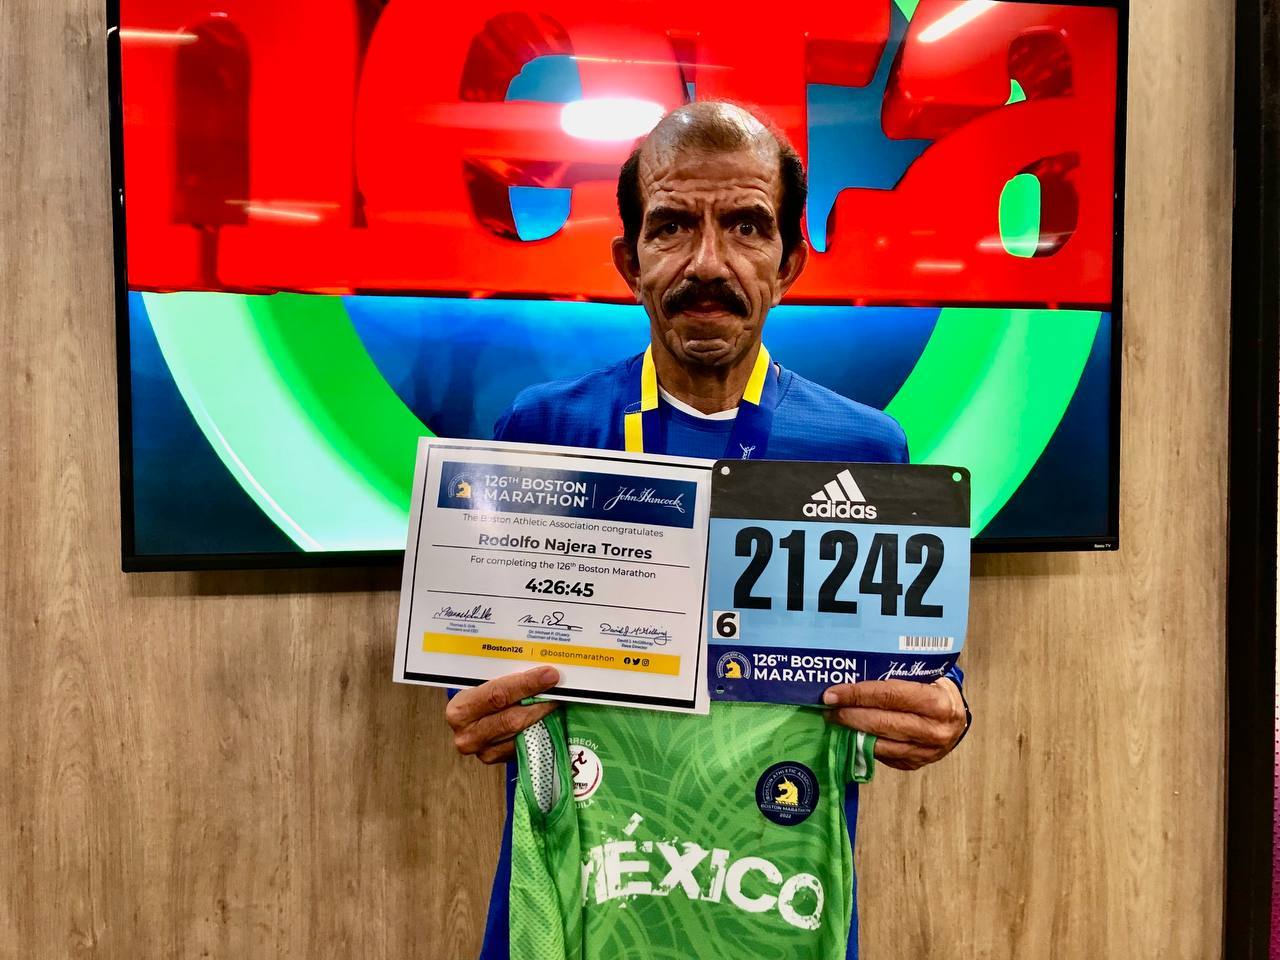 El gomezpalatino Rodolfo Nájera Torres visitó las instalaciones de El Siglo de Torreón para contar sus experiencias como corredor; ya terminó los maratones de Boston, Chicago y Nueva York. (MIXTÉ ANTUNA/EL SIGLO DE TORREÓN)